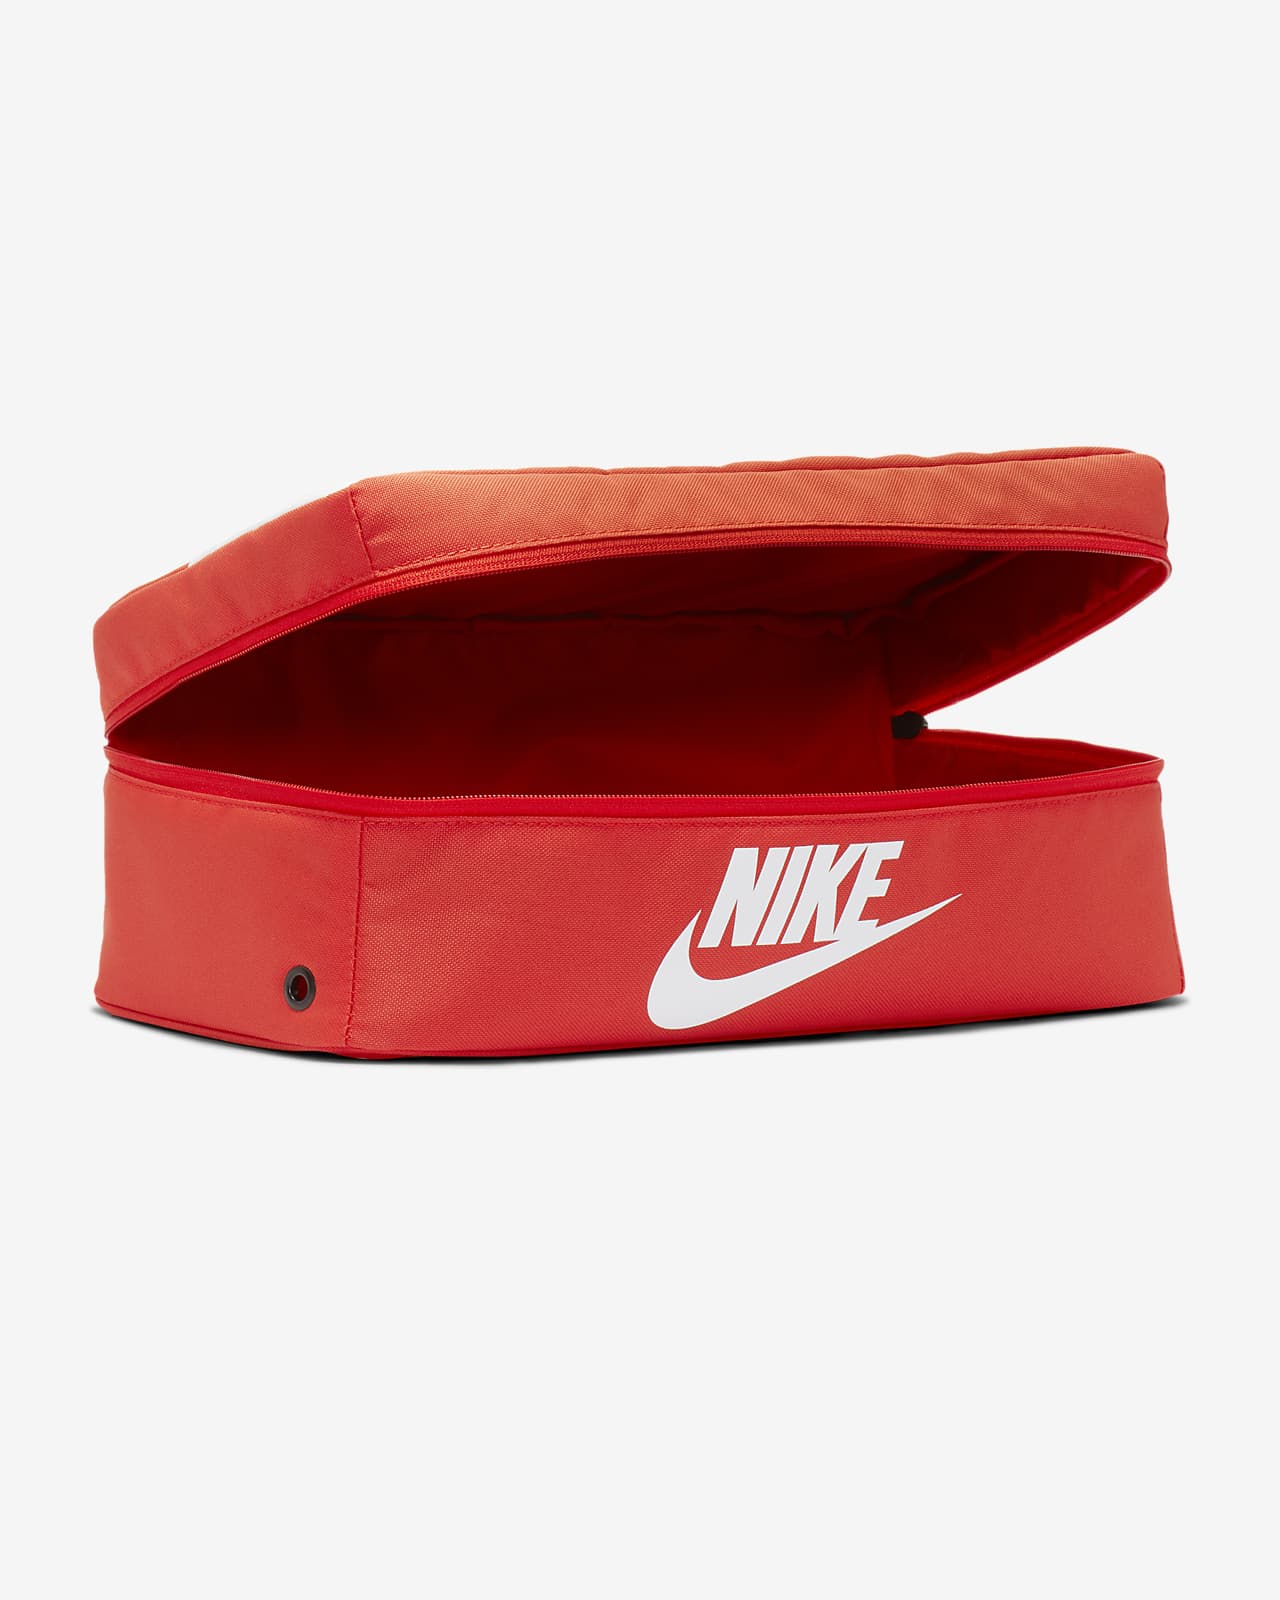 Nike Shoebox 鞋包-耐克(Nike)中国官网